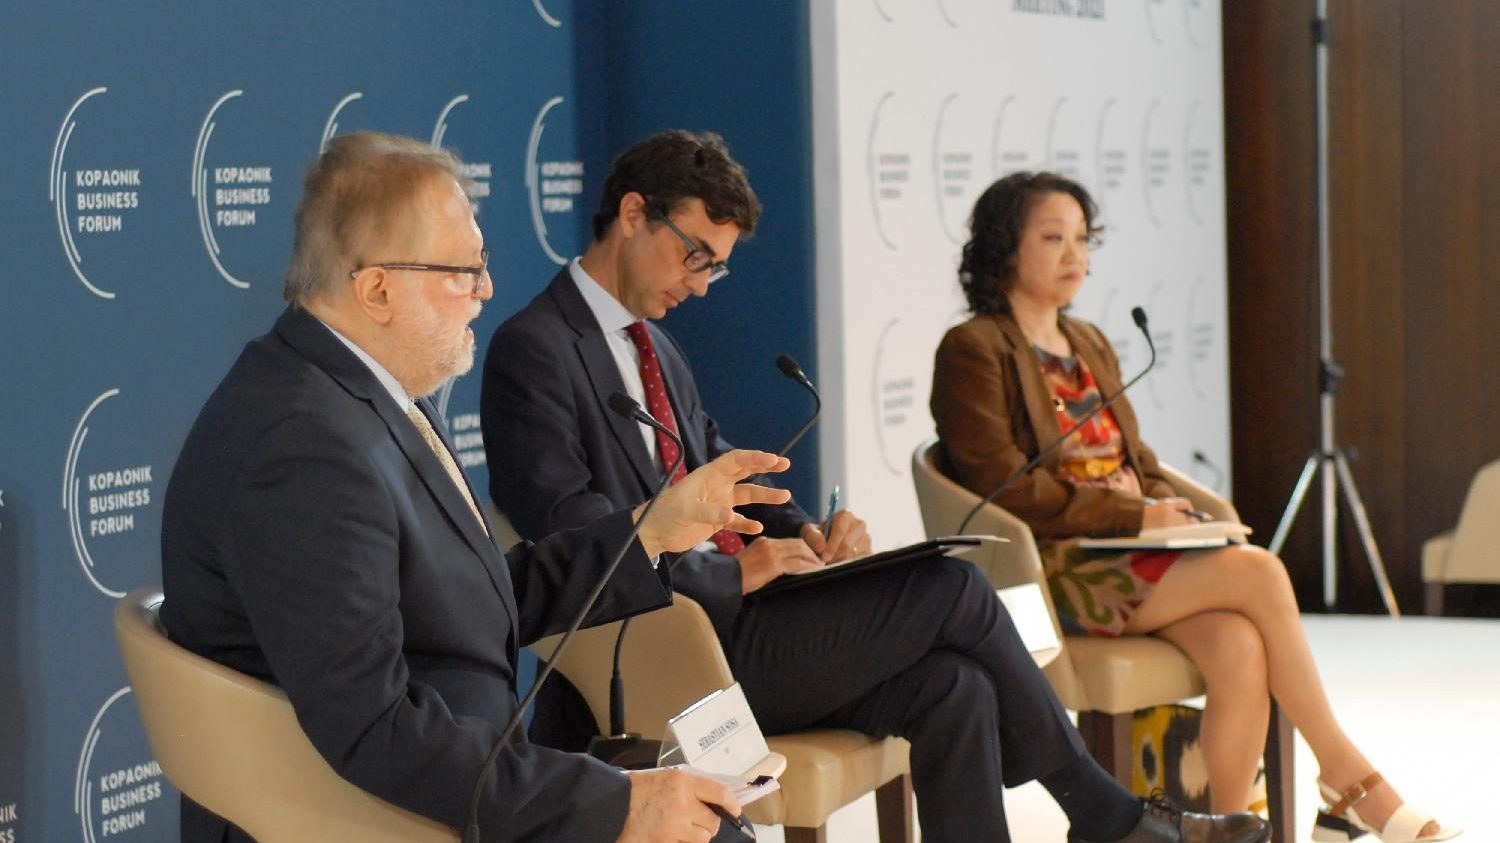 Ekonomisti na Kopaonik biznis forumu: Za privredni oporavak i dalje važna podrška države 1